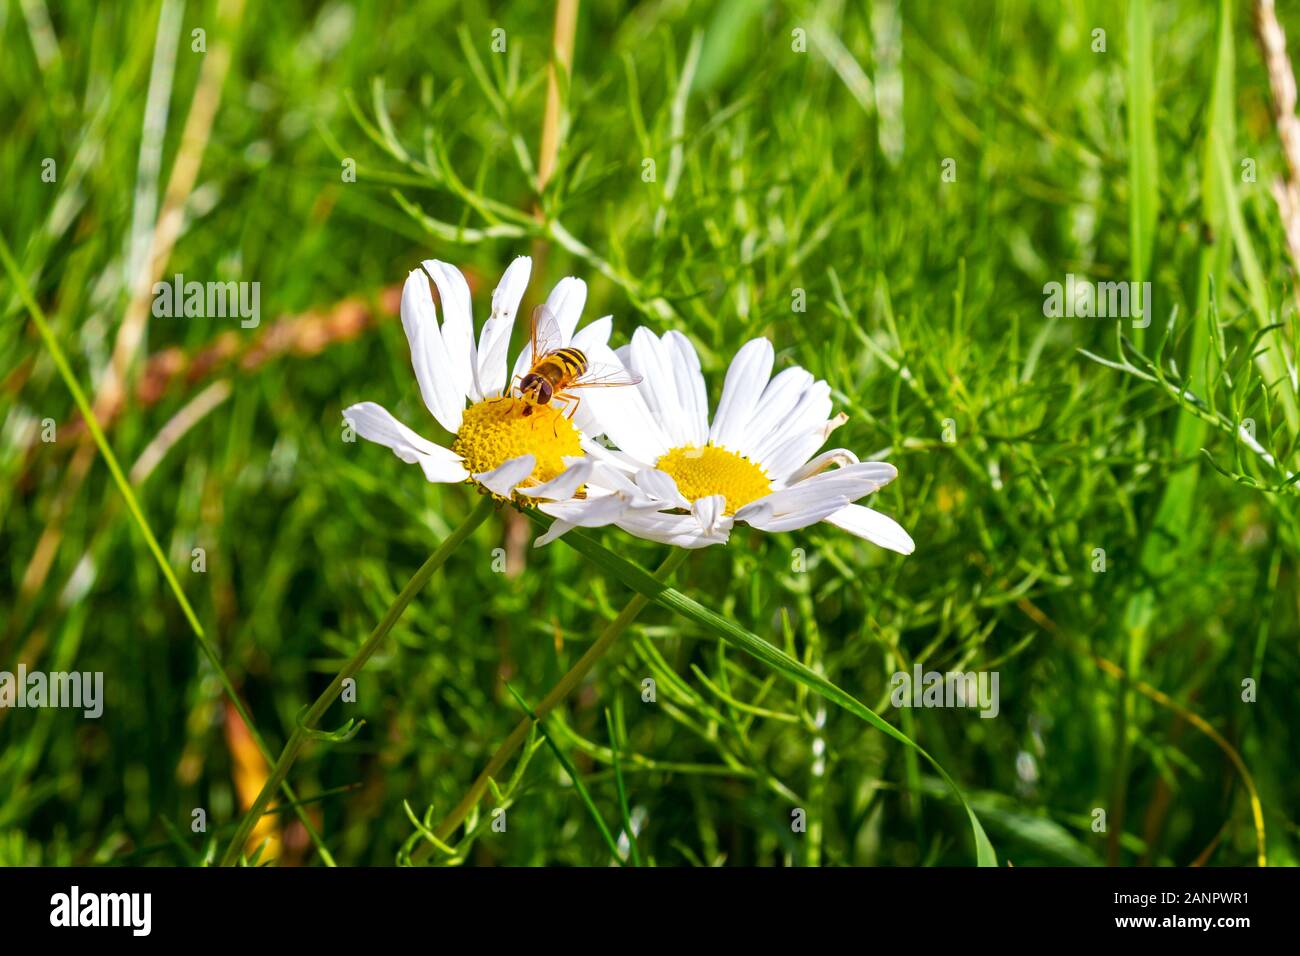 L'ape raccoglie il polline da echinacea fiore di coneflower. Purpurea di Echinacea, PowWow White, testa conica gialla e petali bianchi. Giardino in Irlanda Foto Stock